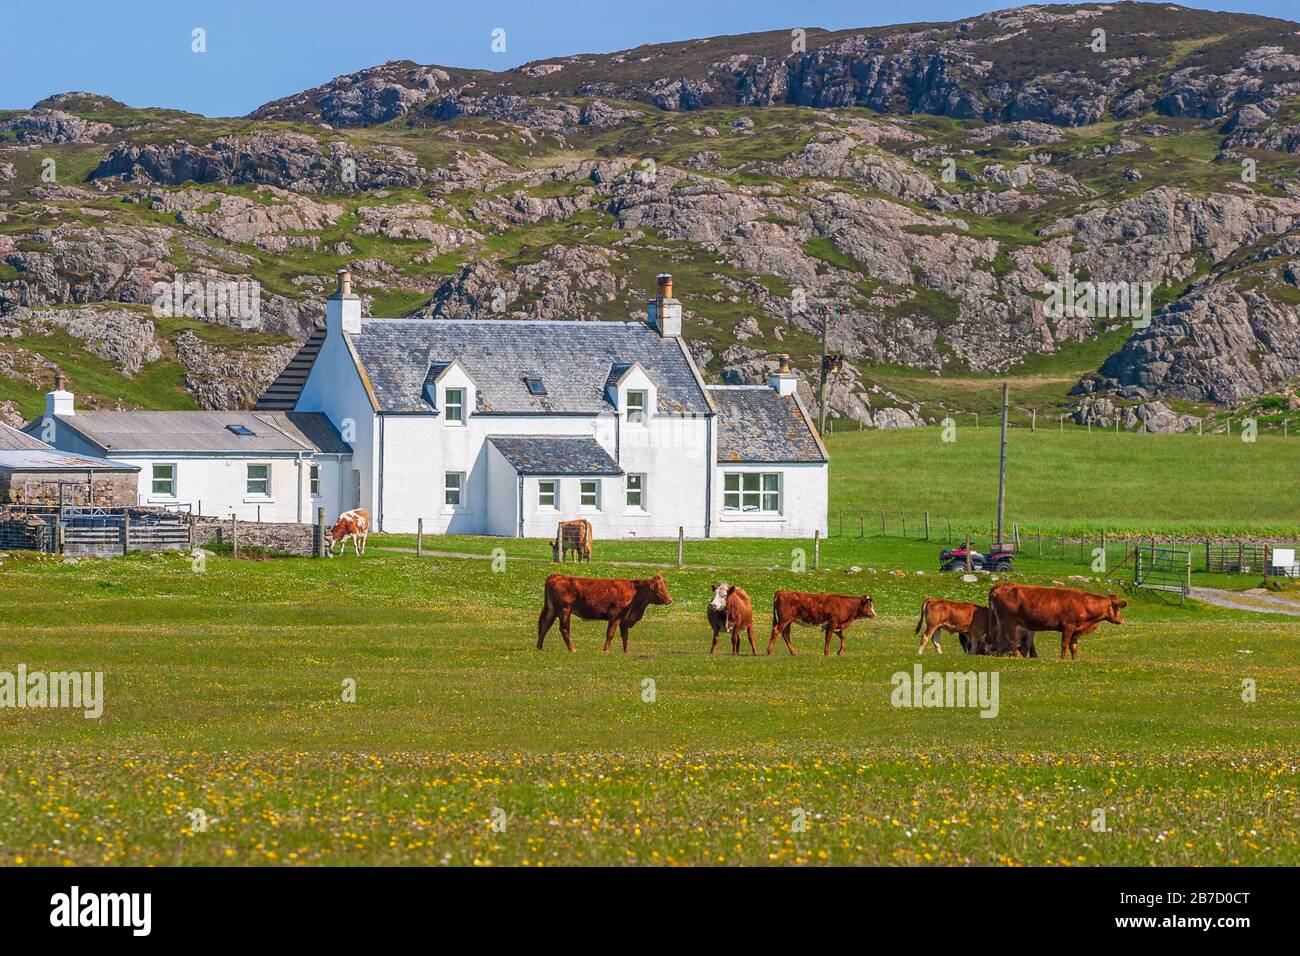 Maison rurale avec vaches sur un pré en Ecosse Banque D'Images